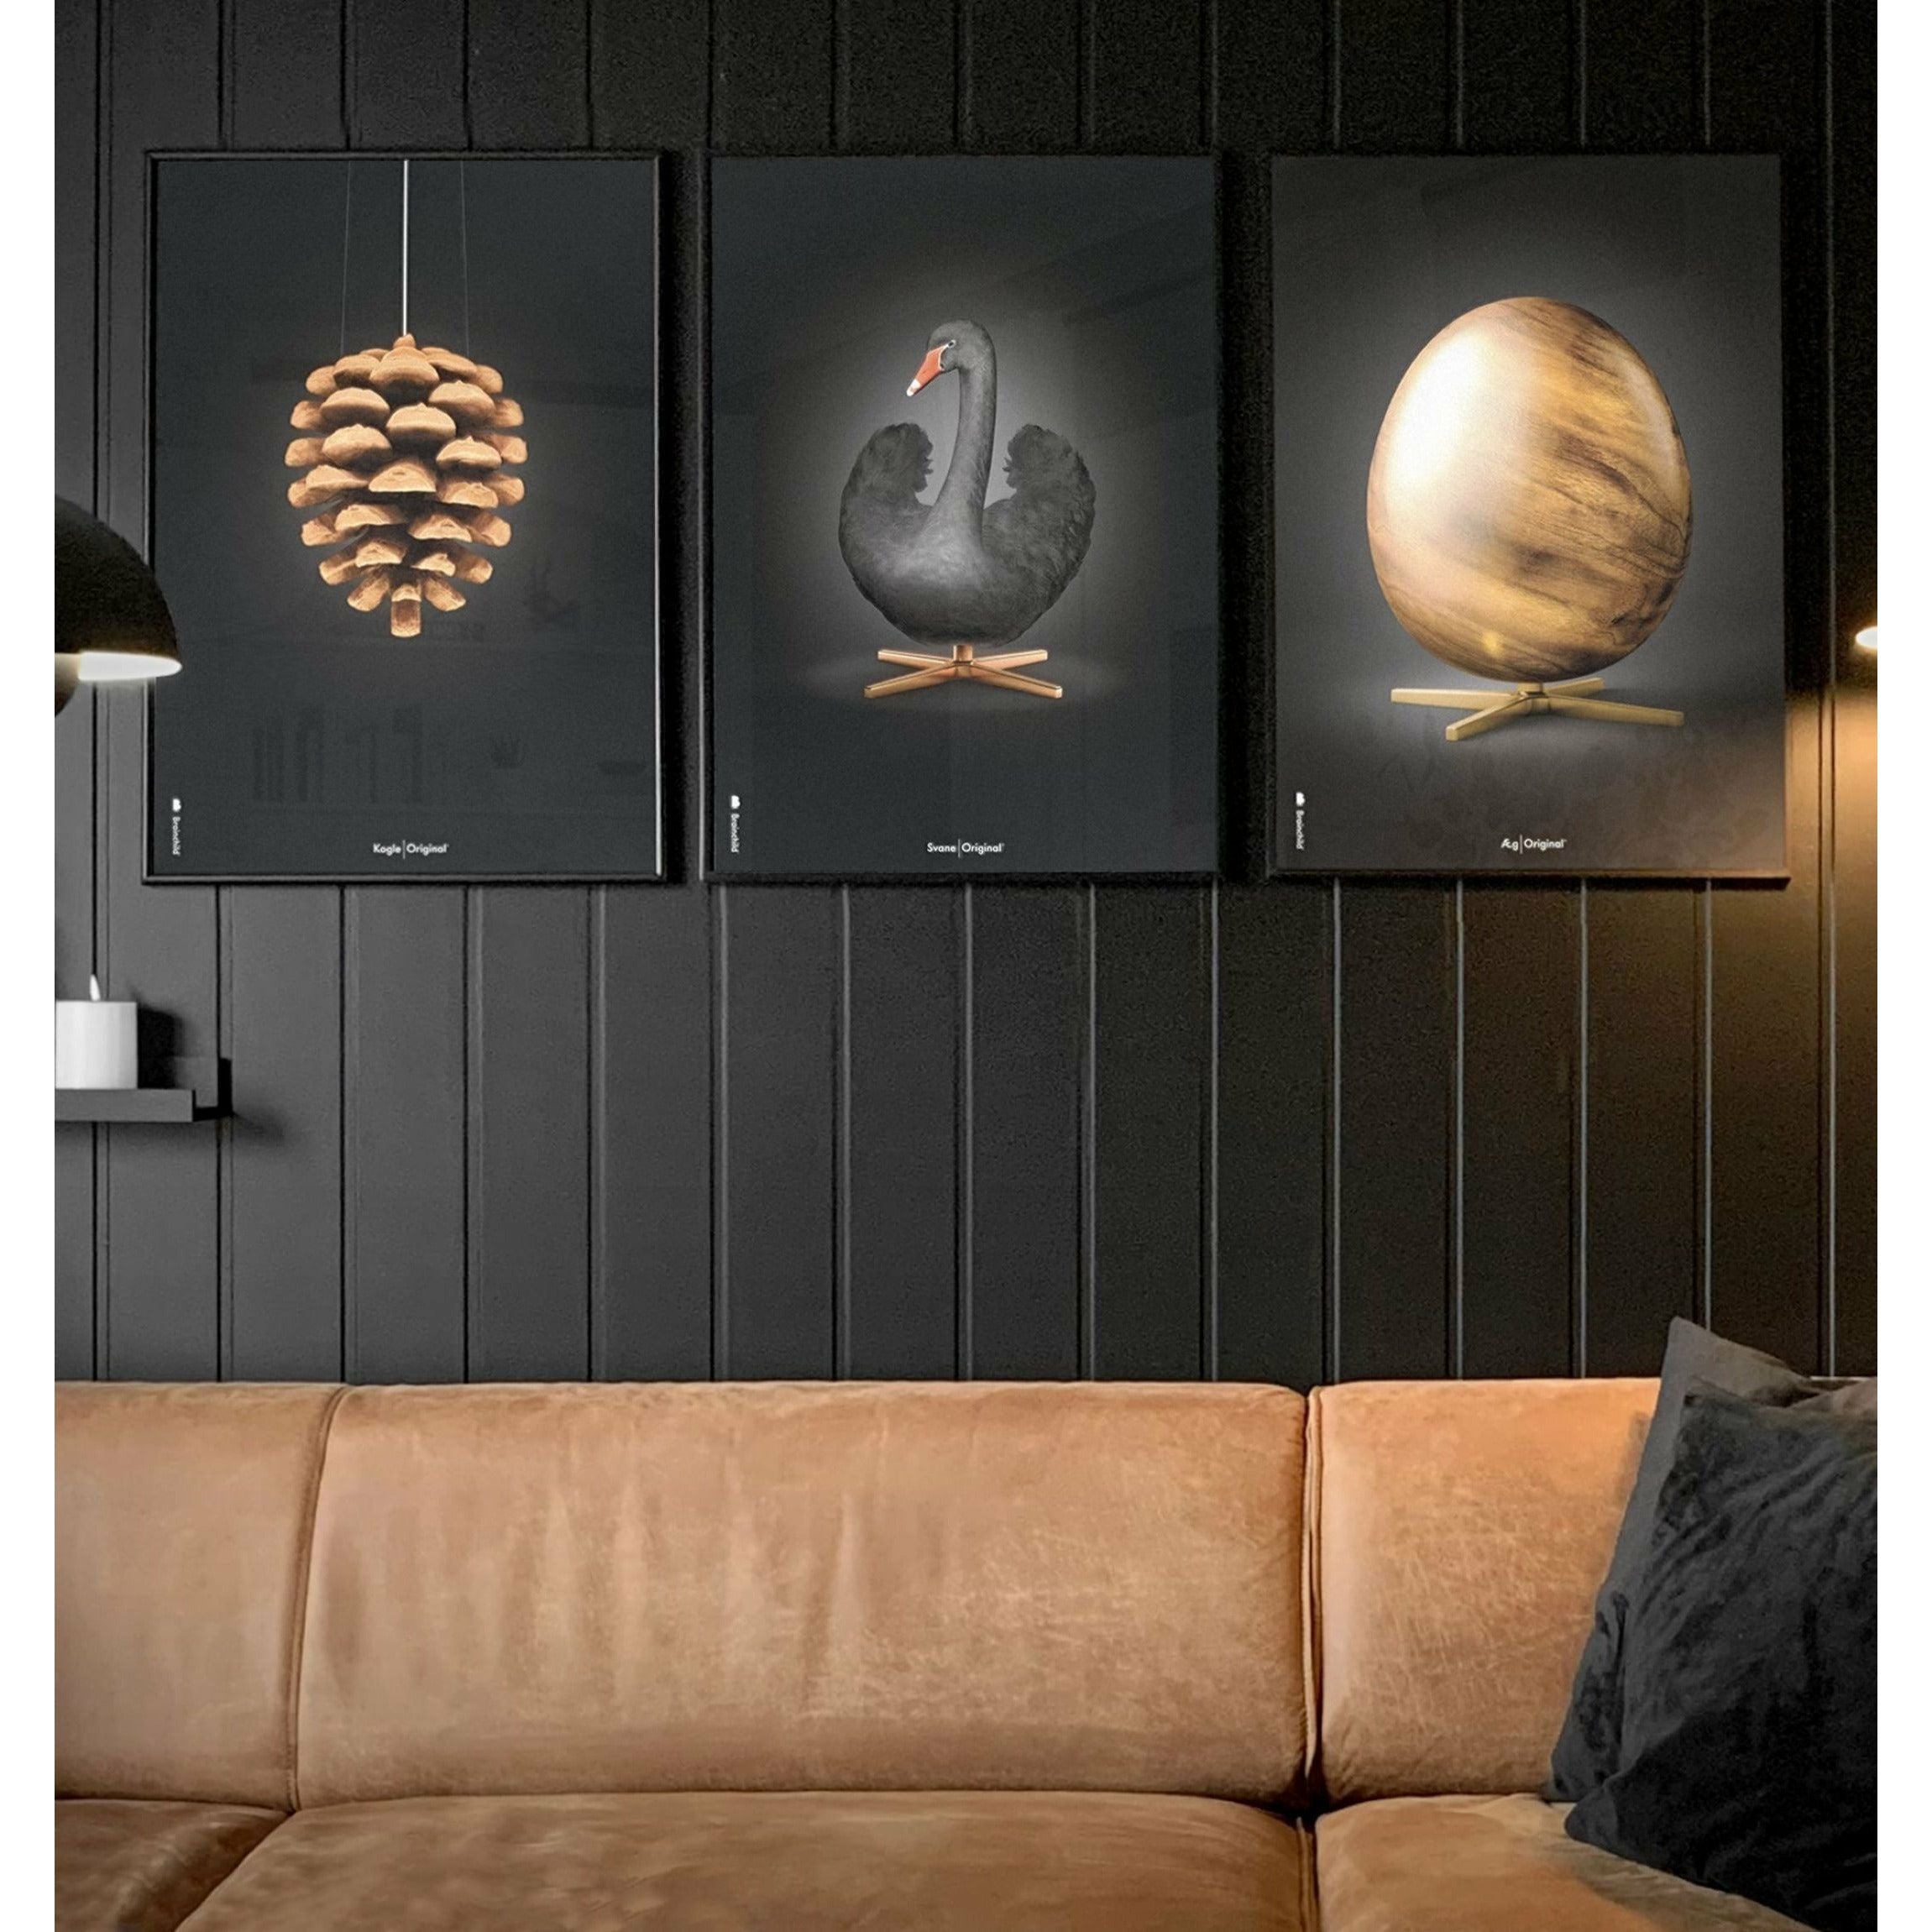 Brainchild Pine Cone Classic Poster, Rahmen aus hellem Holz A5, schwarzer Hintergrund